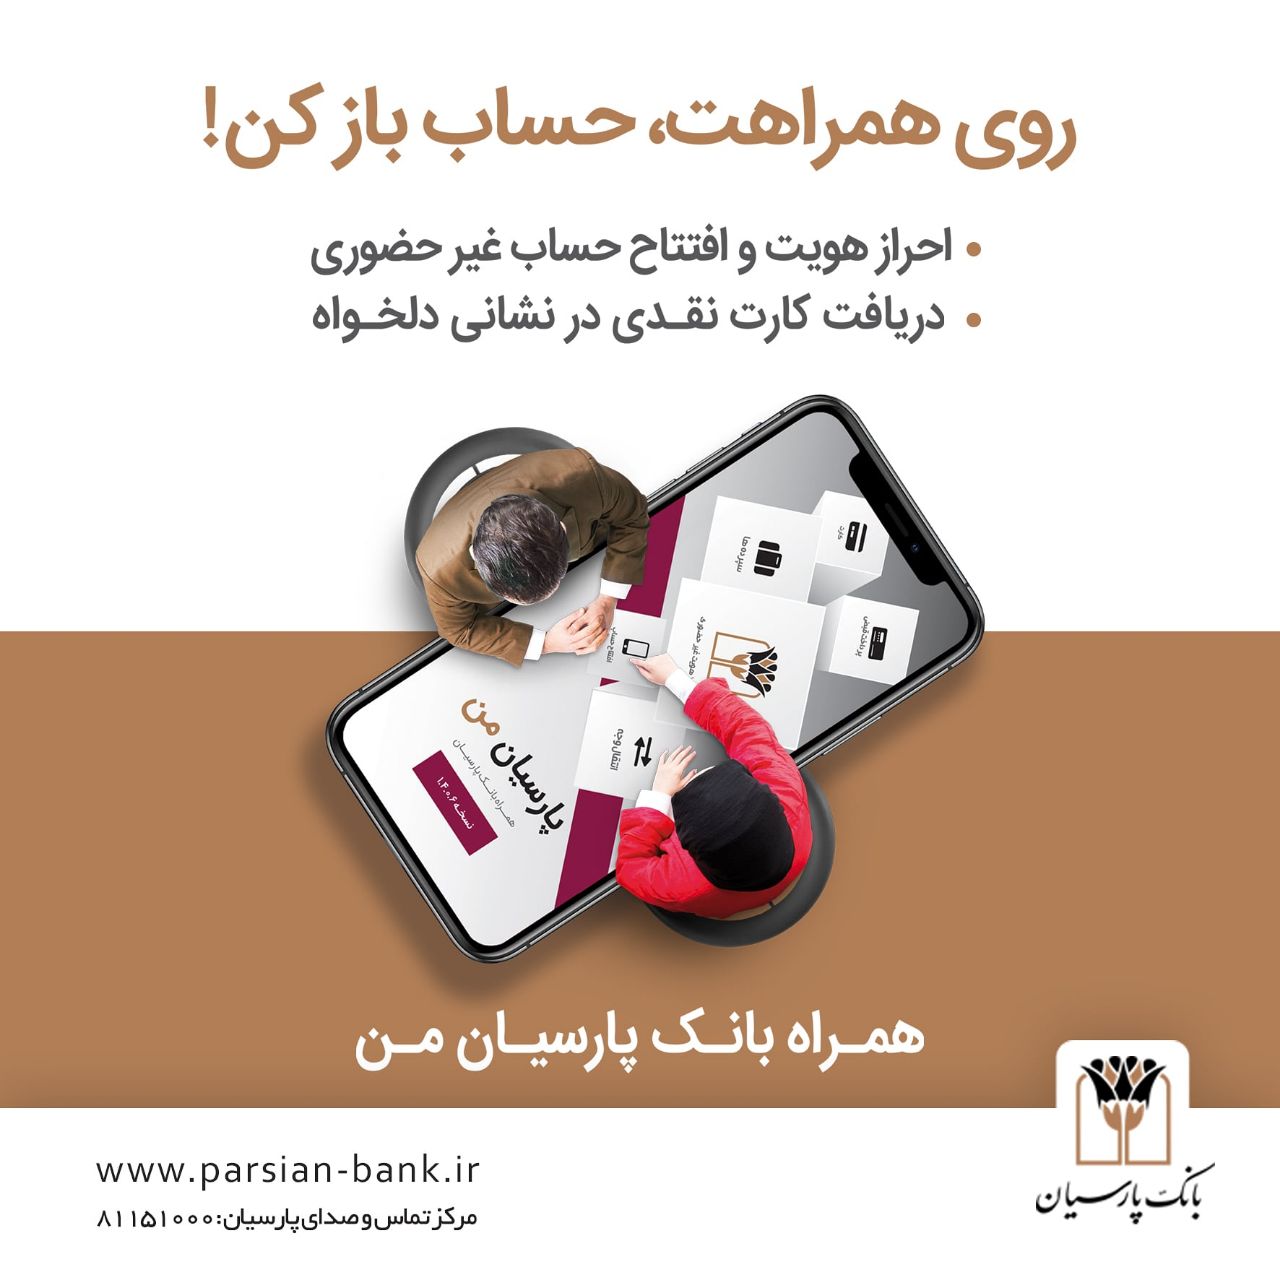 احراز هویت و افتتاح حساب غیرحضوری با همراه بانک پارسیان